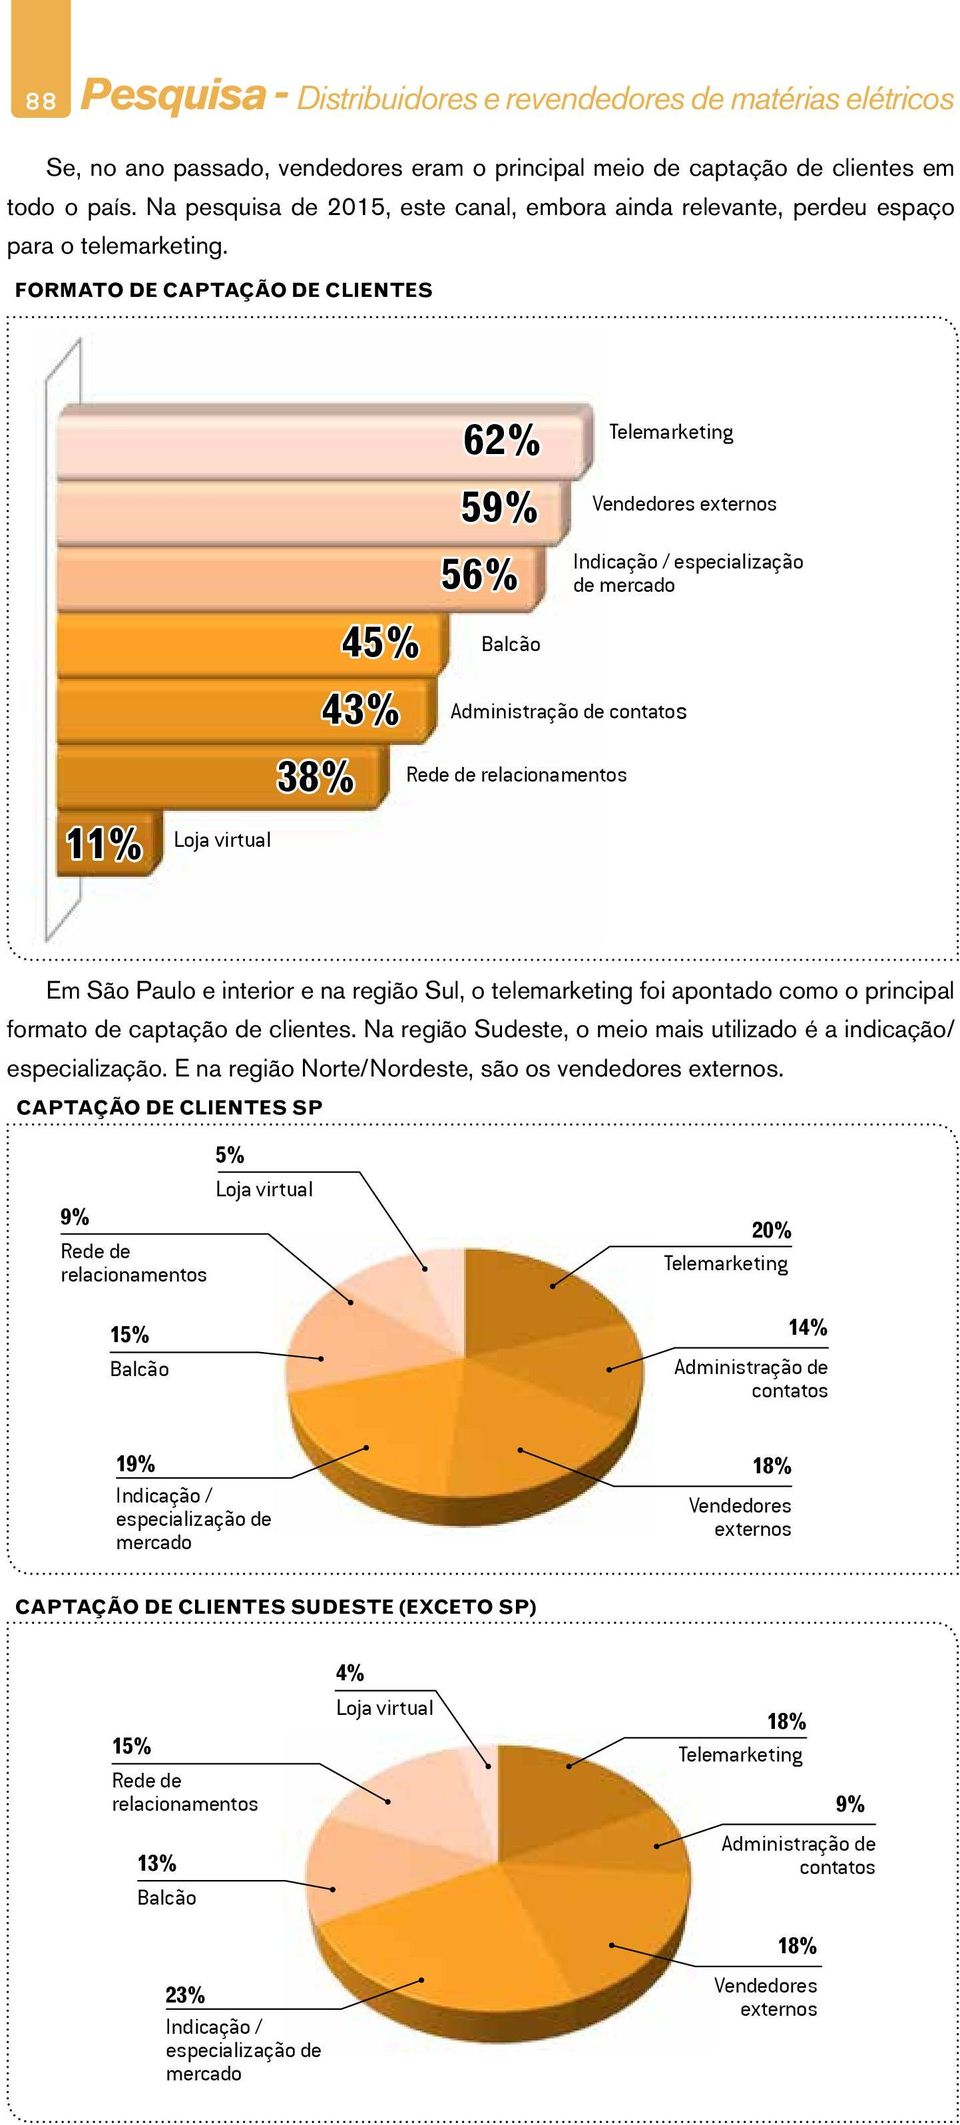 FORMATO DE CAPTAÇÃO DE CLIENTES 62% 59% 56% Vendedores externos Indicação / especialização de mercado 45% 43% Administração de contatos 38% Rede de relacionamentos 11% Loja virtual Em e interior e na